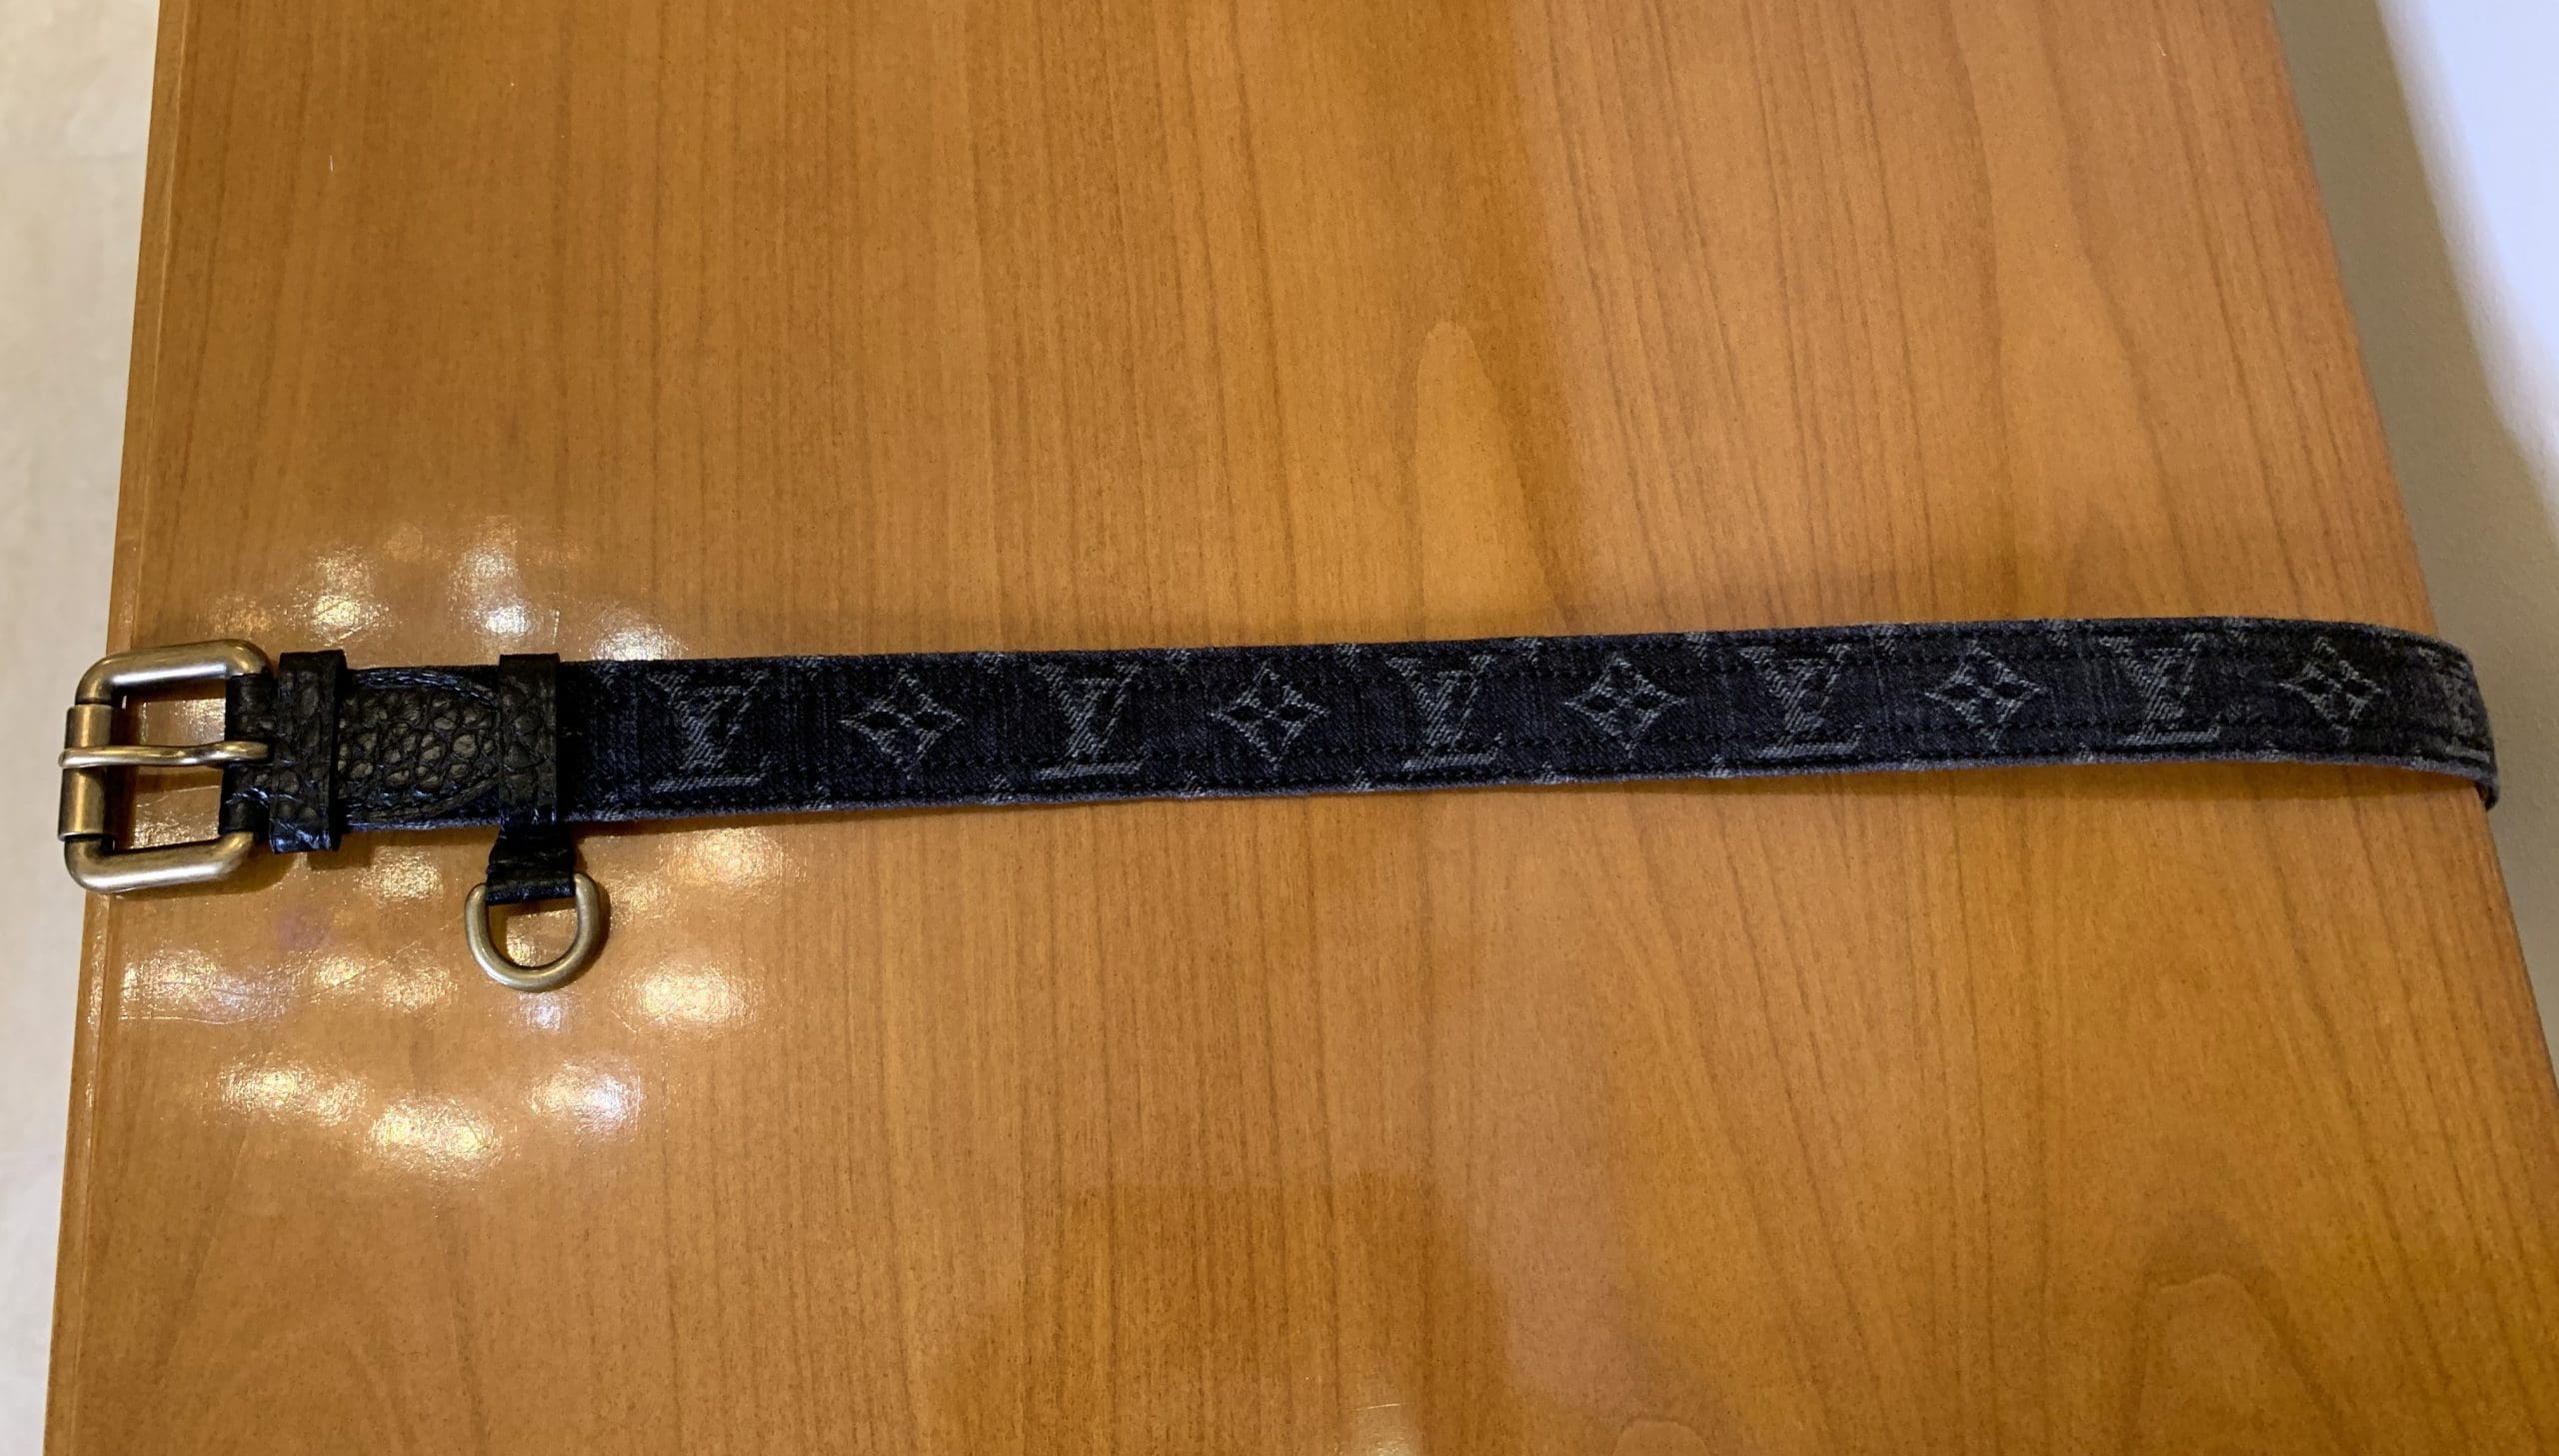 Louis Vuitton Signature Belt Monogram Chains 35MM Brown/Orange in